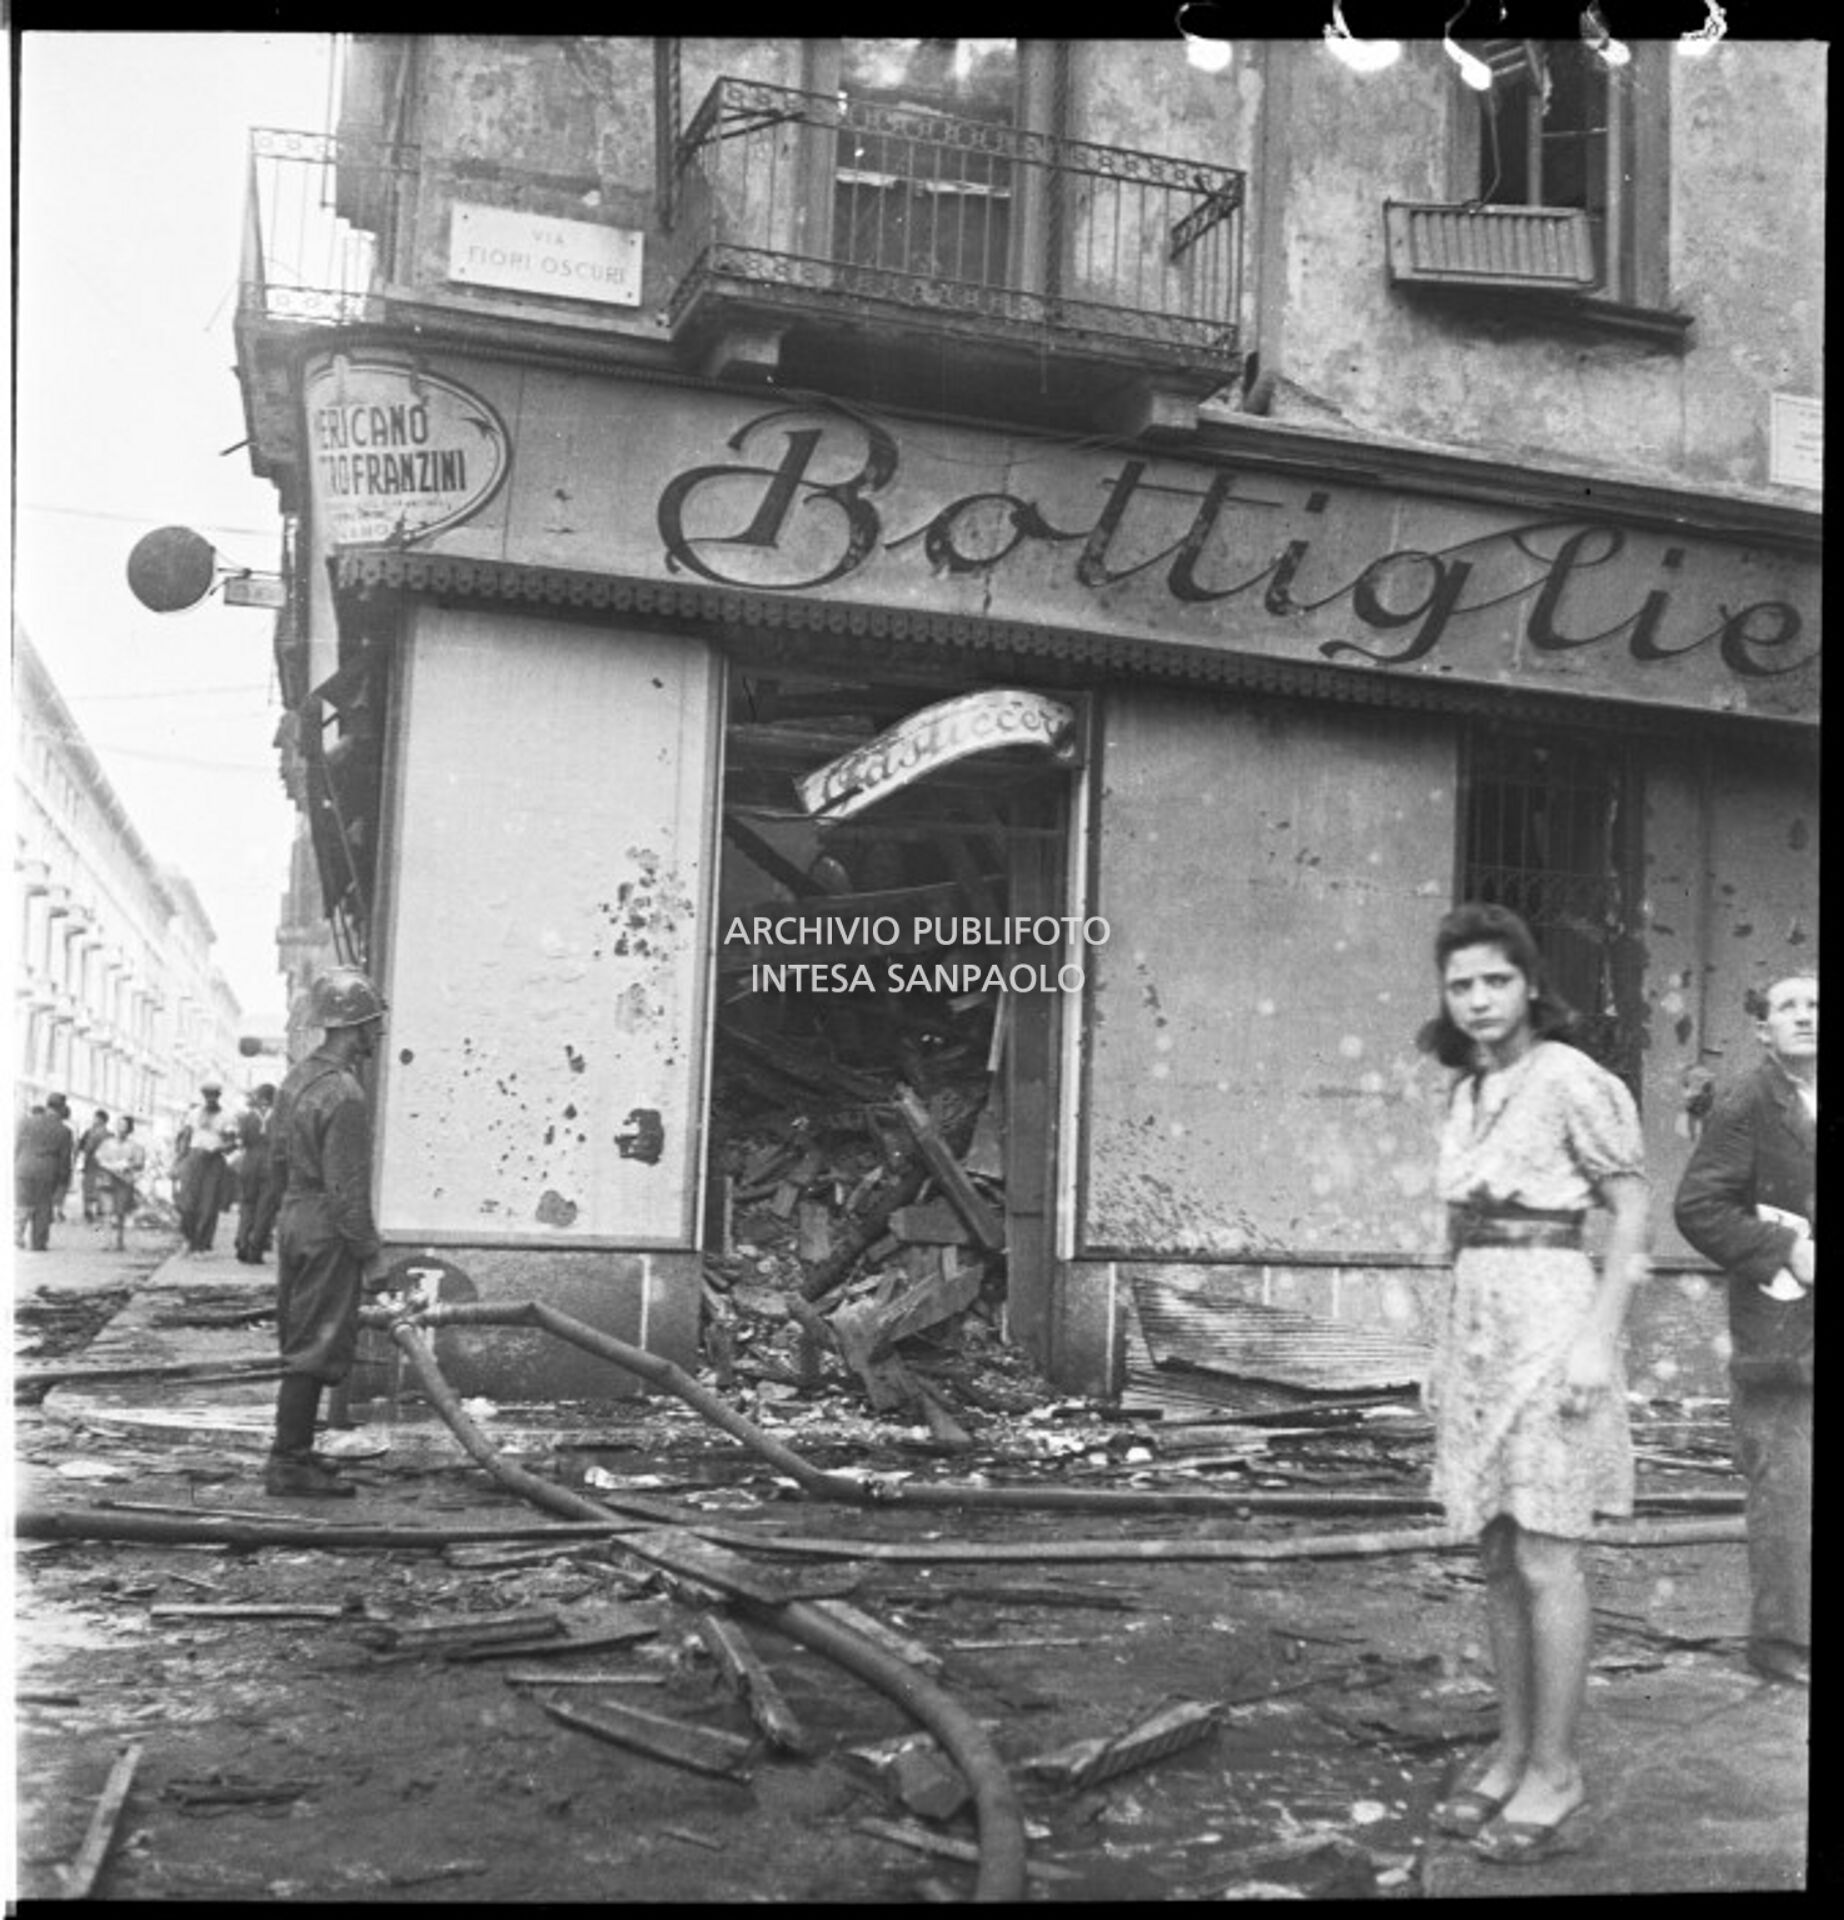 Una ragazza davanti alla bottiglieria di Luigi Piola, in via Fiori Oscuri a Milano, sventrata dai bombardamenti; a sinistra un vigile del fuoco ancora impegnato nelle operazioni di spegnimento degli incendi provocati dagli attacchi aerei